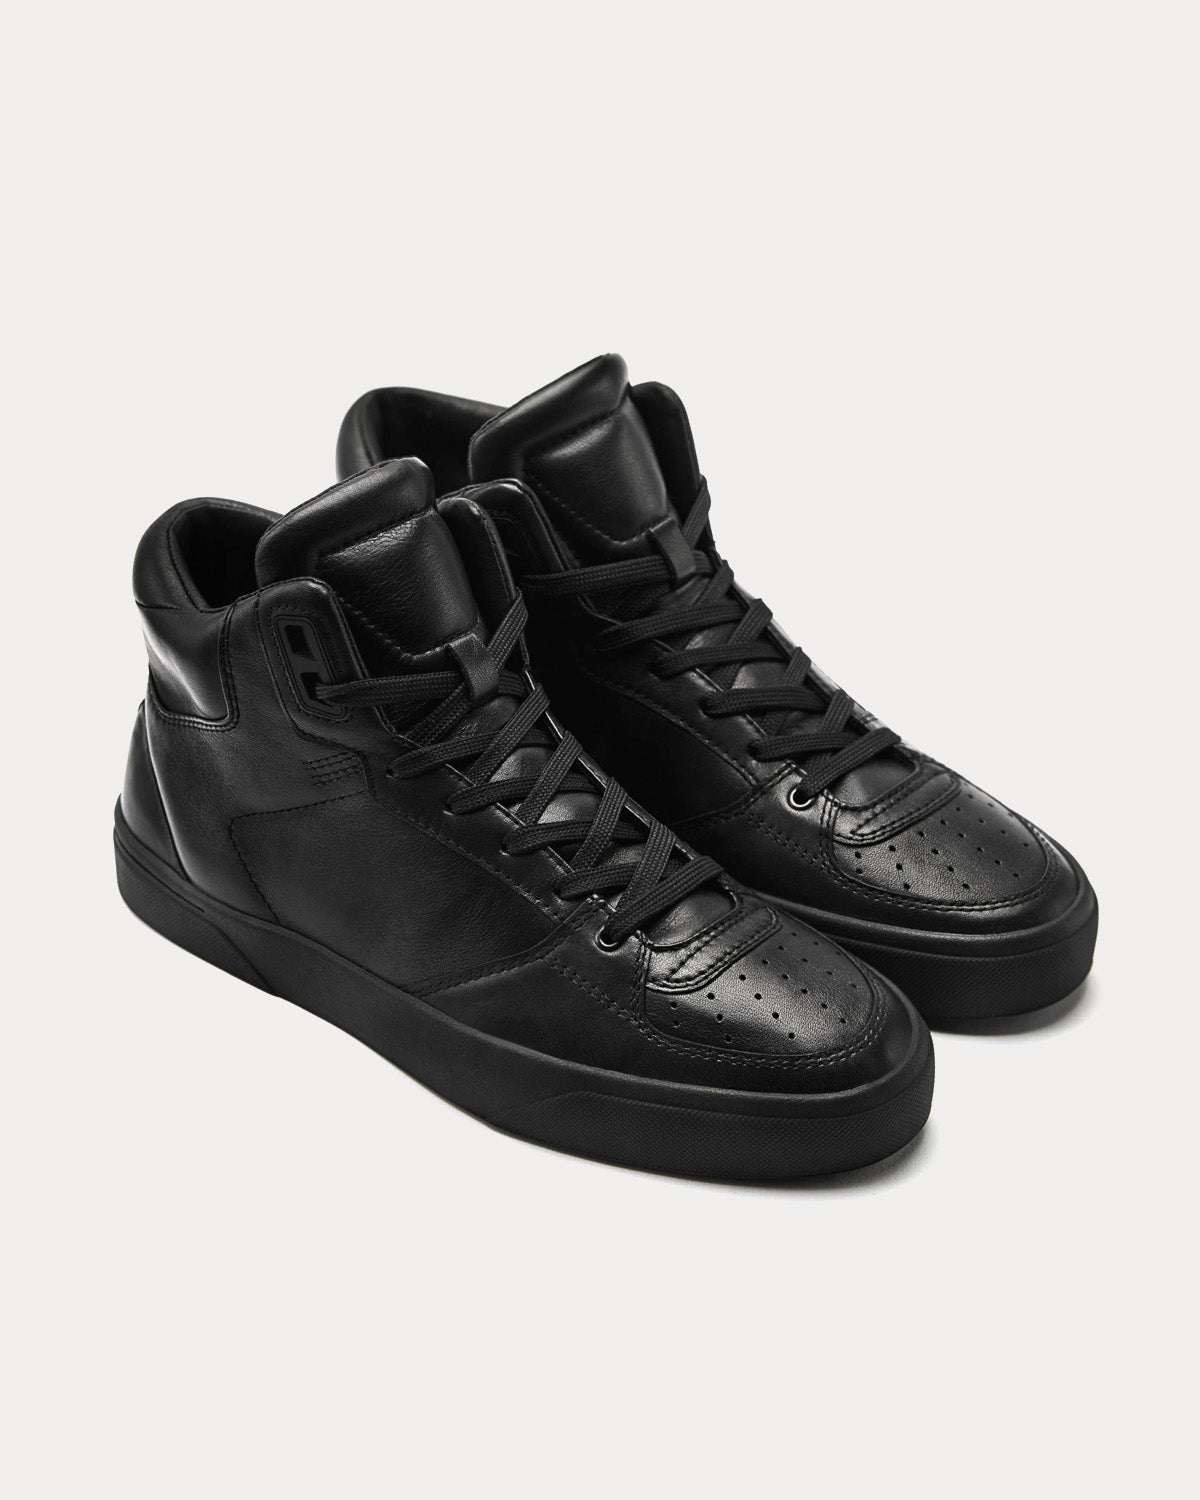 Vor - 2B TIEFSCHWARZ Black High Top Sneakers